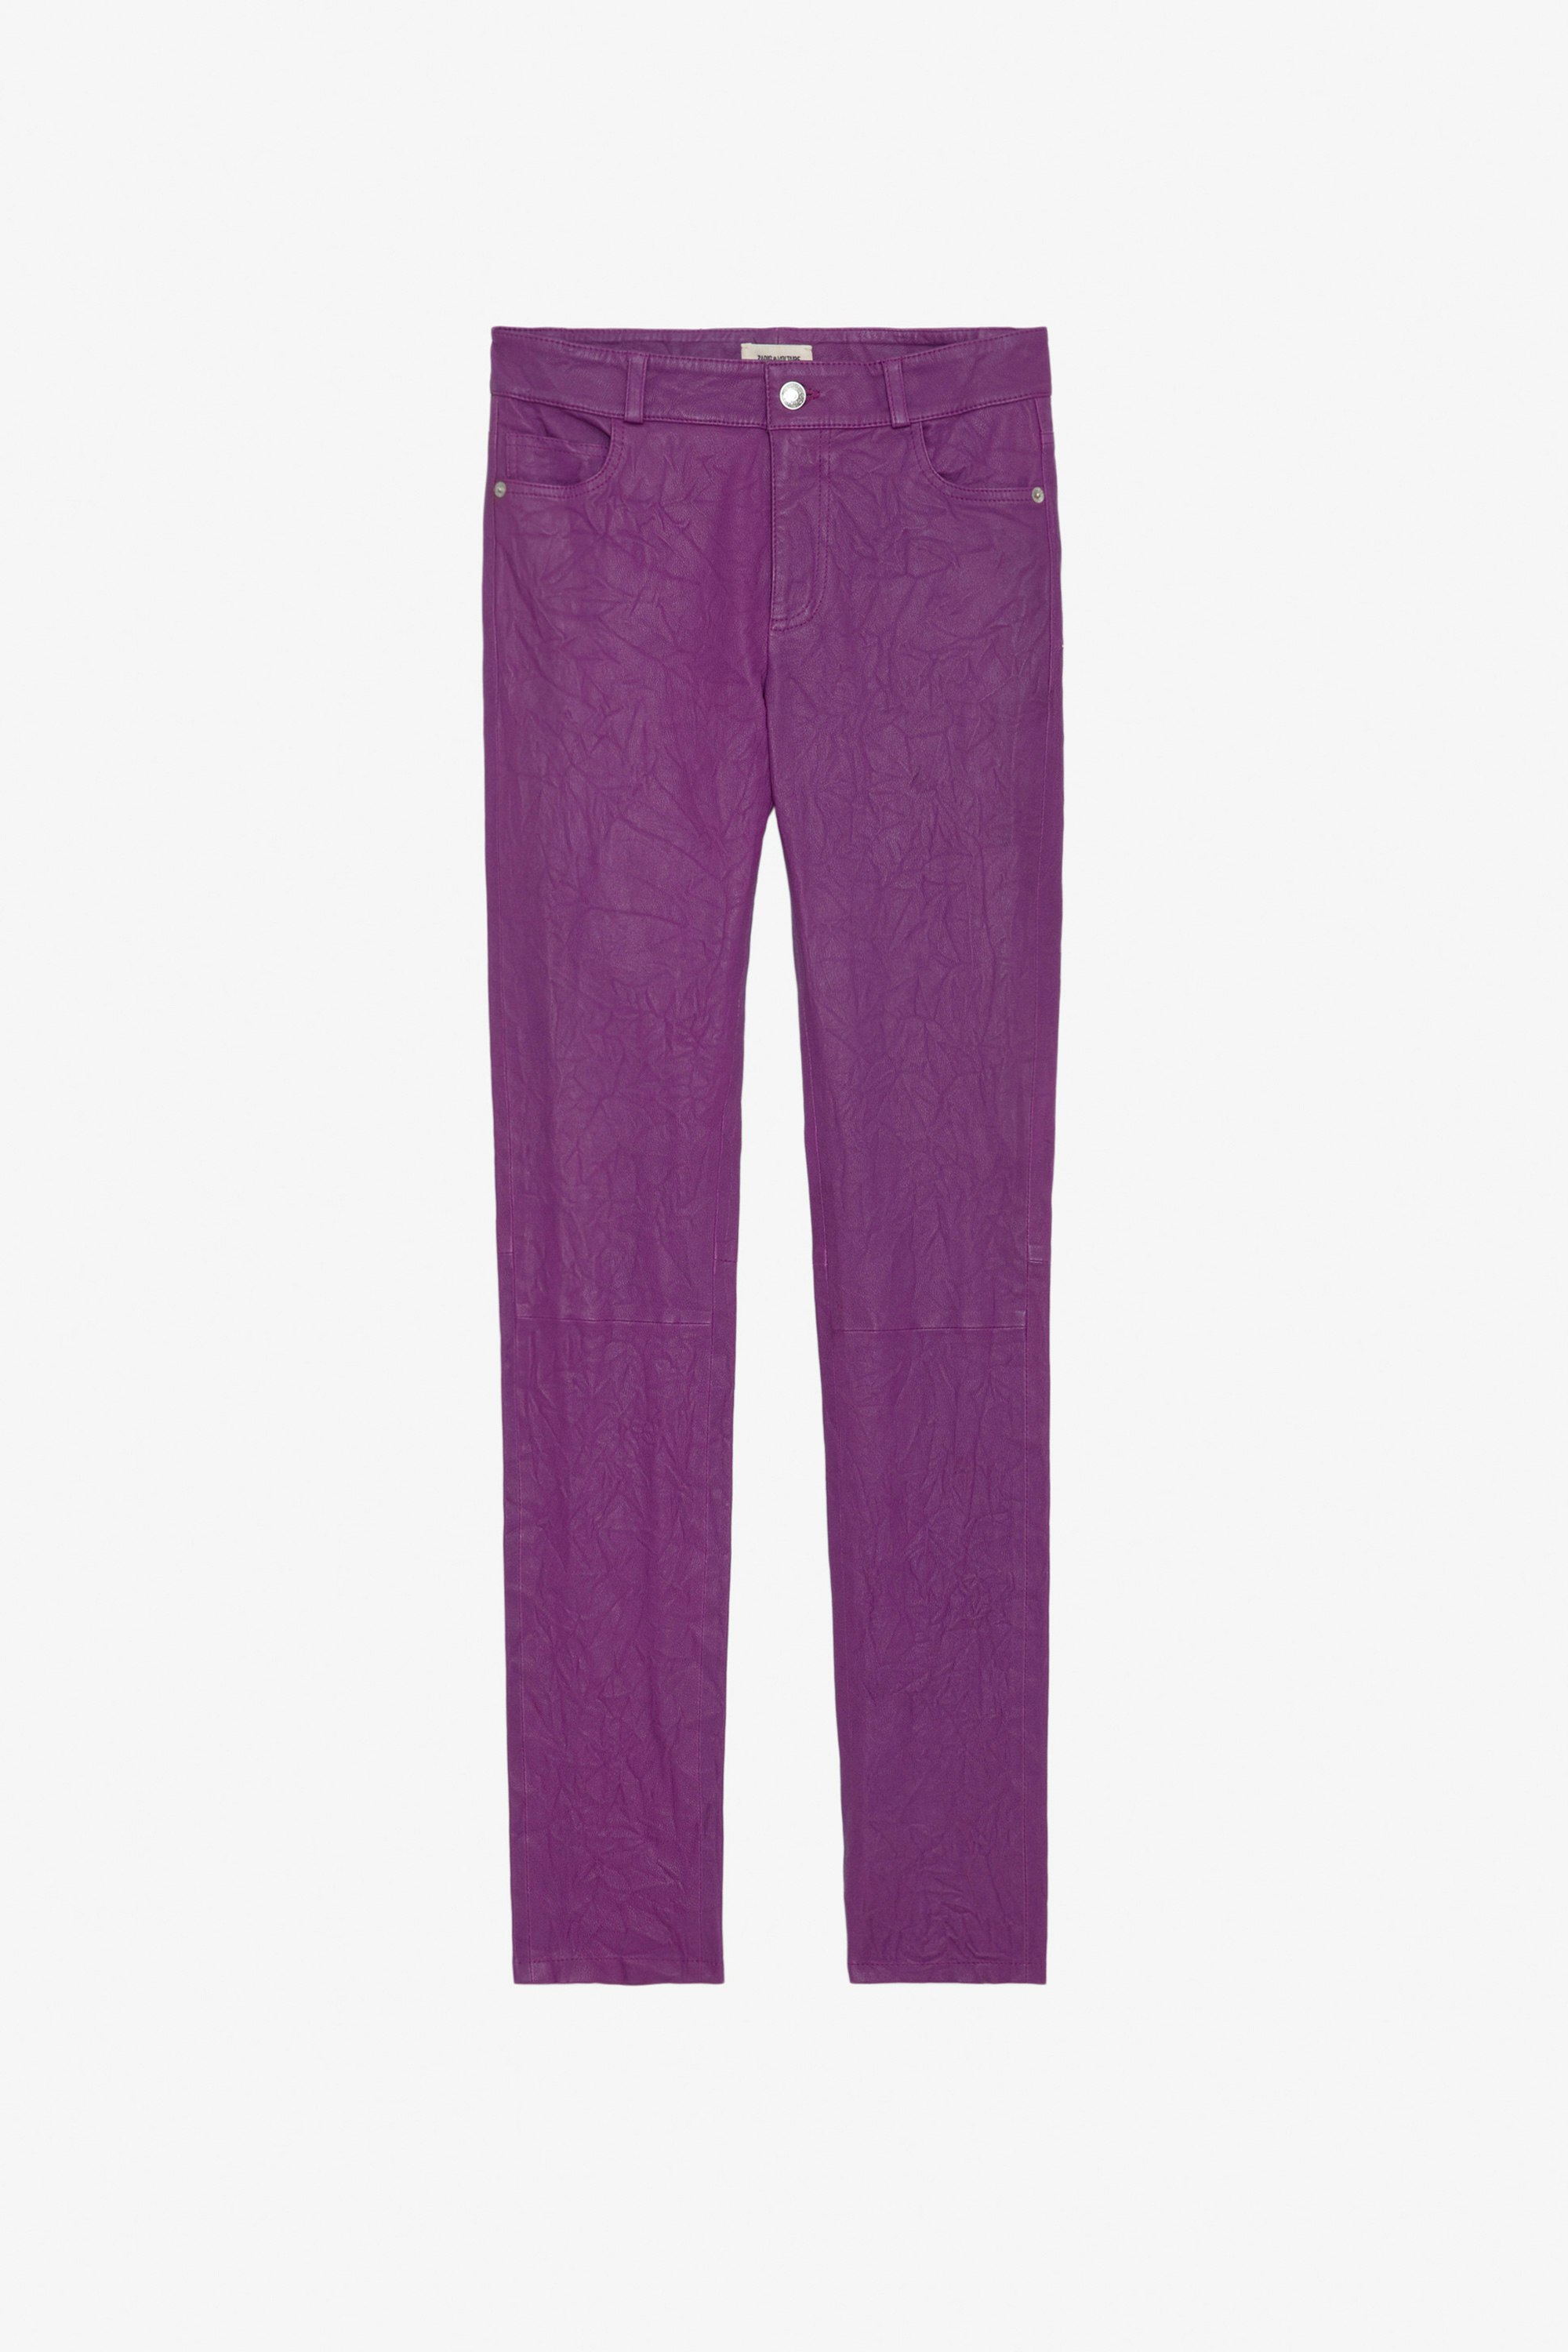 Pantalon Phlame Cuir Froissé - Pantalon en cuir froissé violet muni de poches.